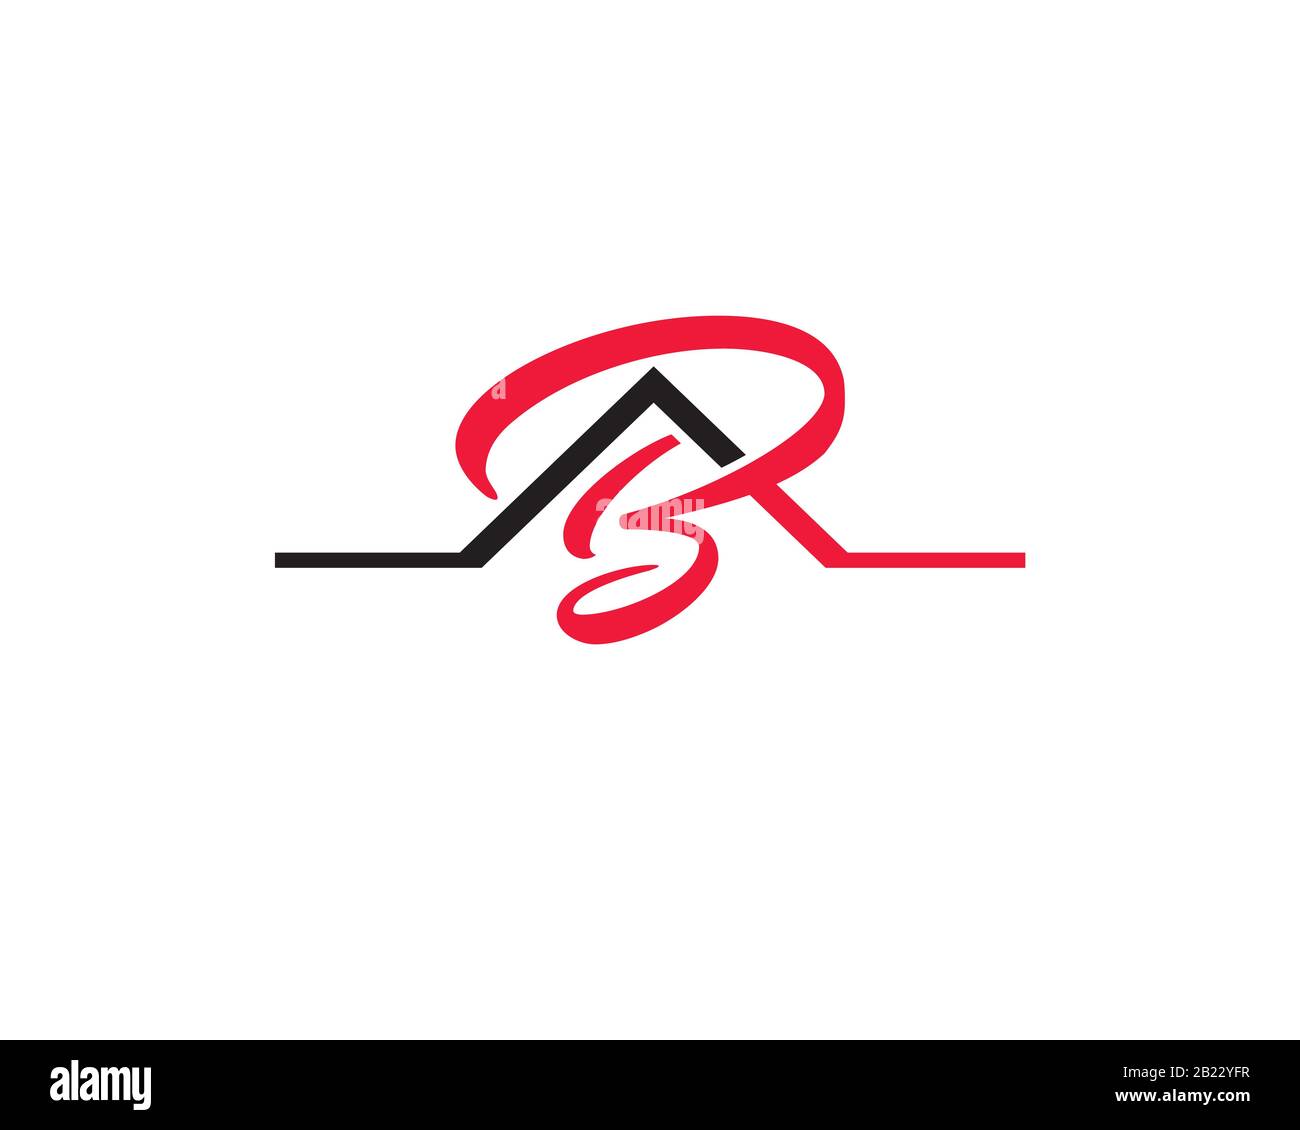 Monogramma anagramma logo lettermark della lettera A B come casa agenzia immobiliare tetto Illustrazione Vettoriale